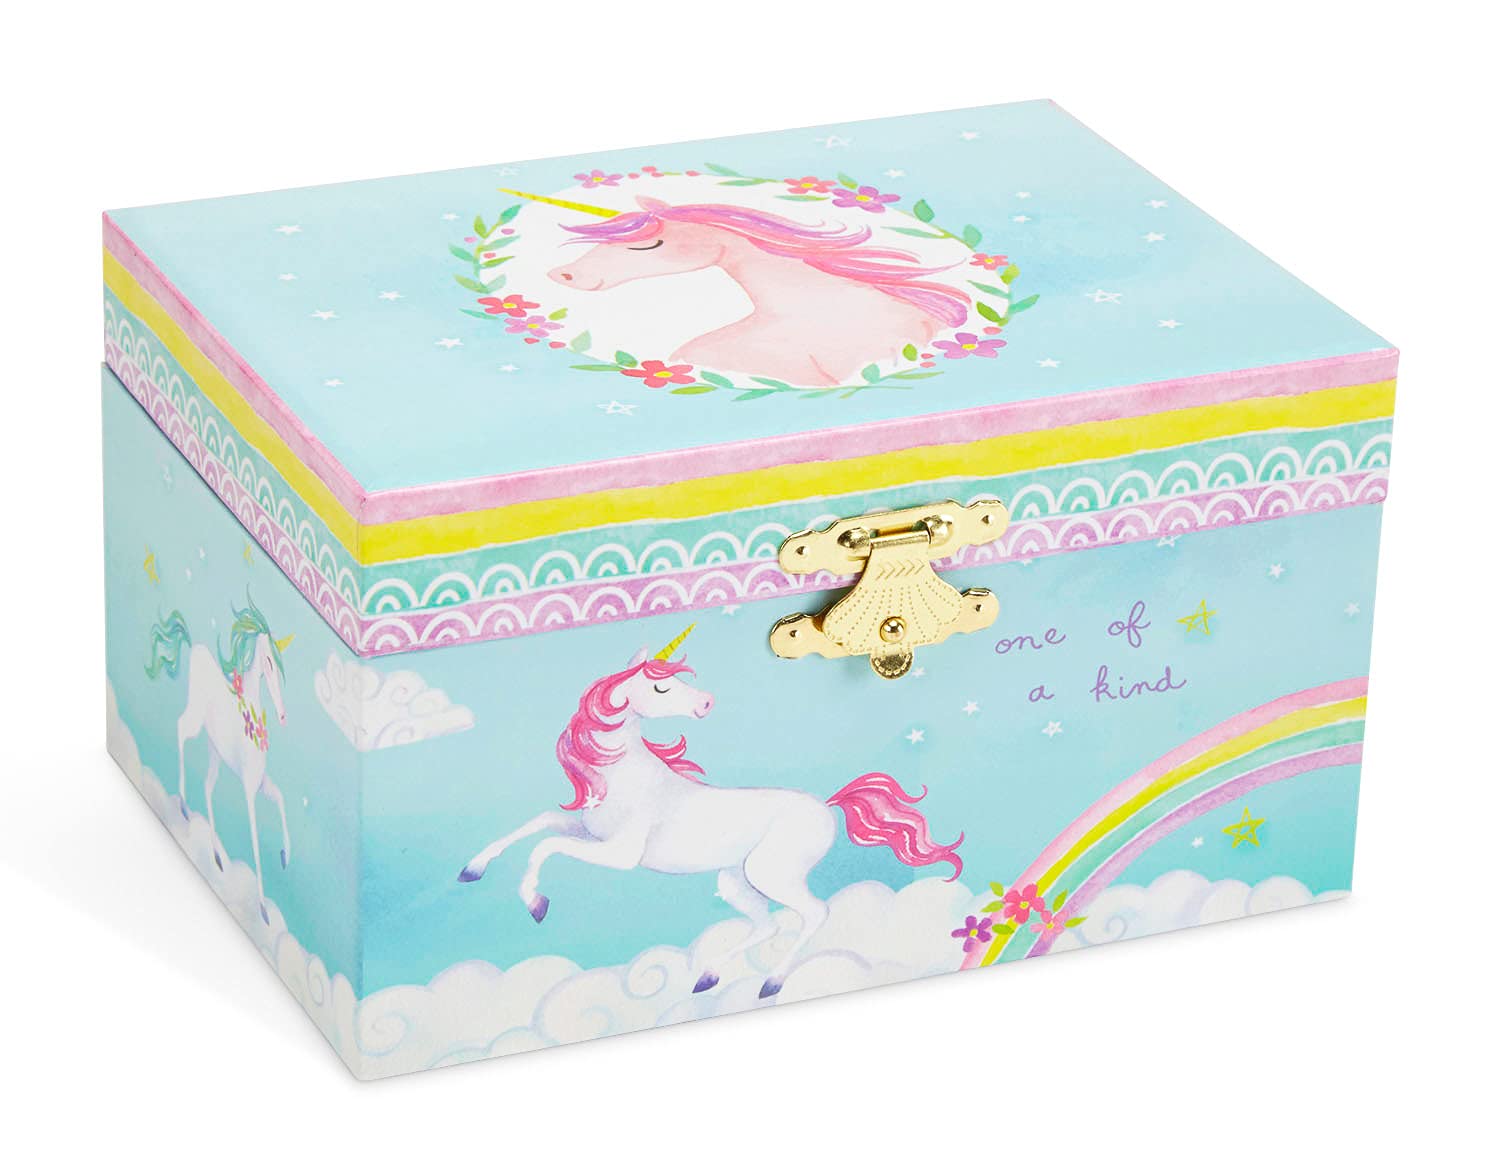 Factory Customized Wholesale Price Birthday Gift Box Musical Jewelry Box Dancing Ballerina Girls Jewelry Music Box